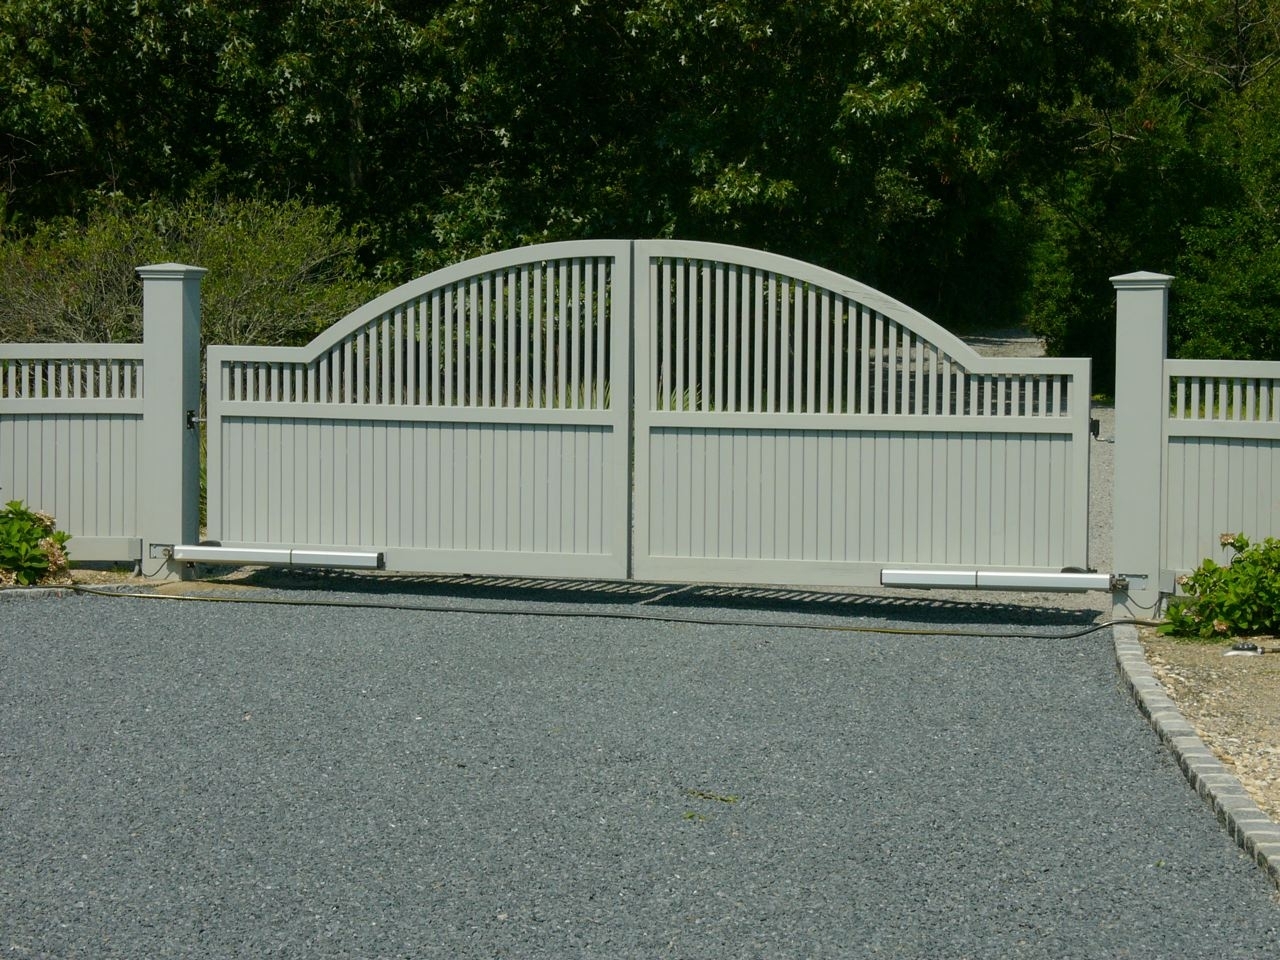 Estate Convex Cedar Driveway Gate with auto access controls